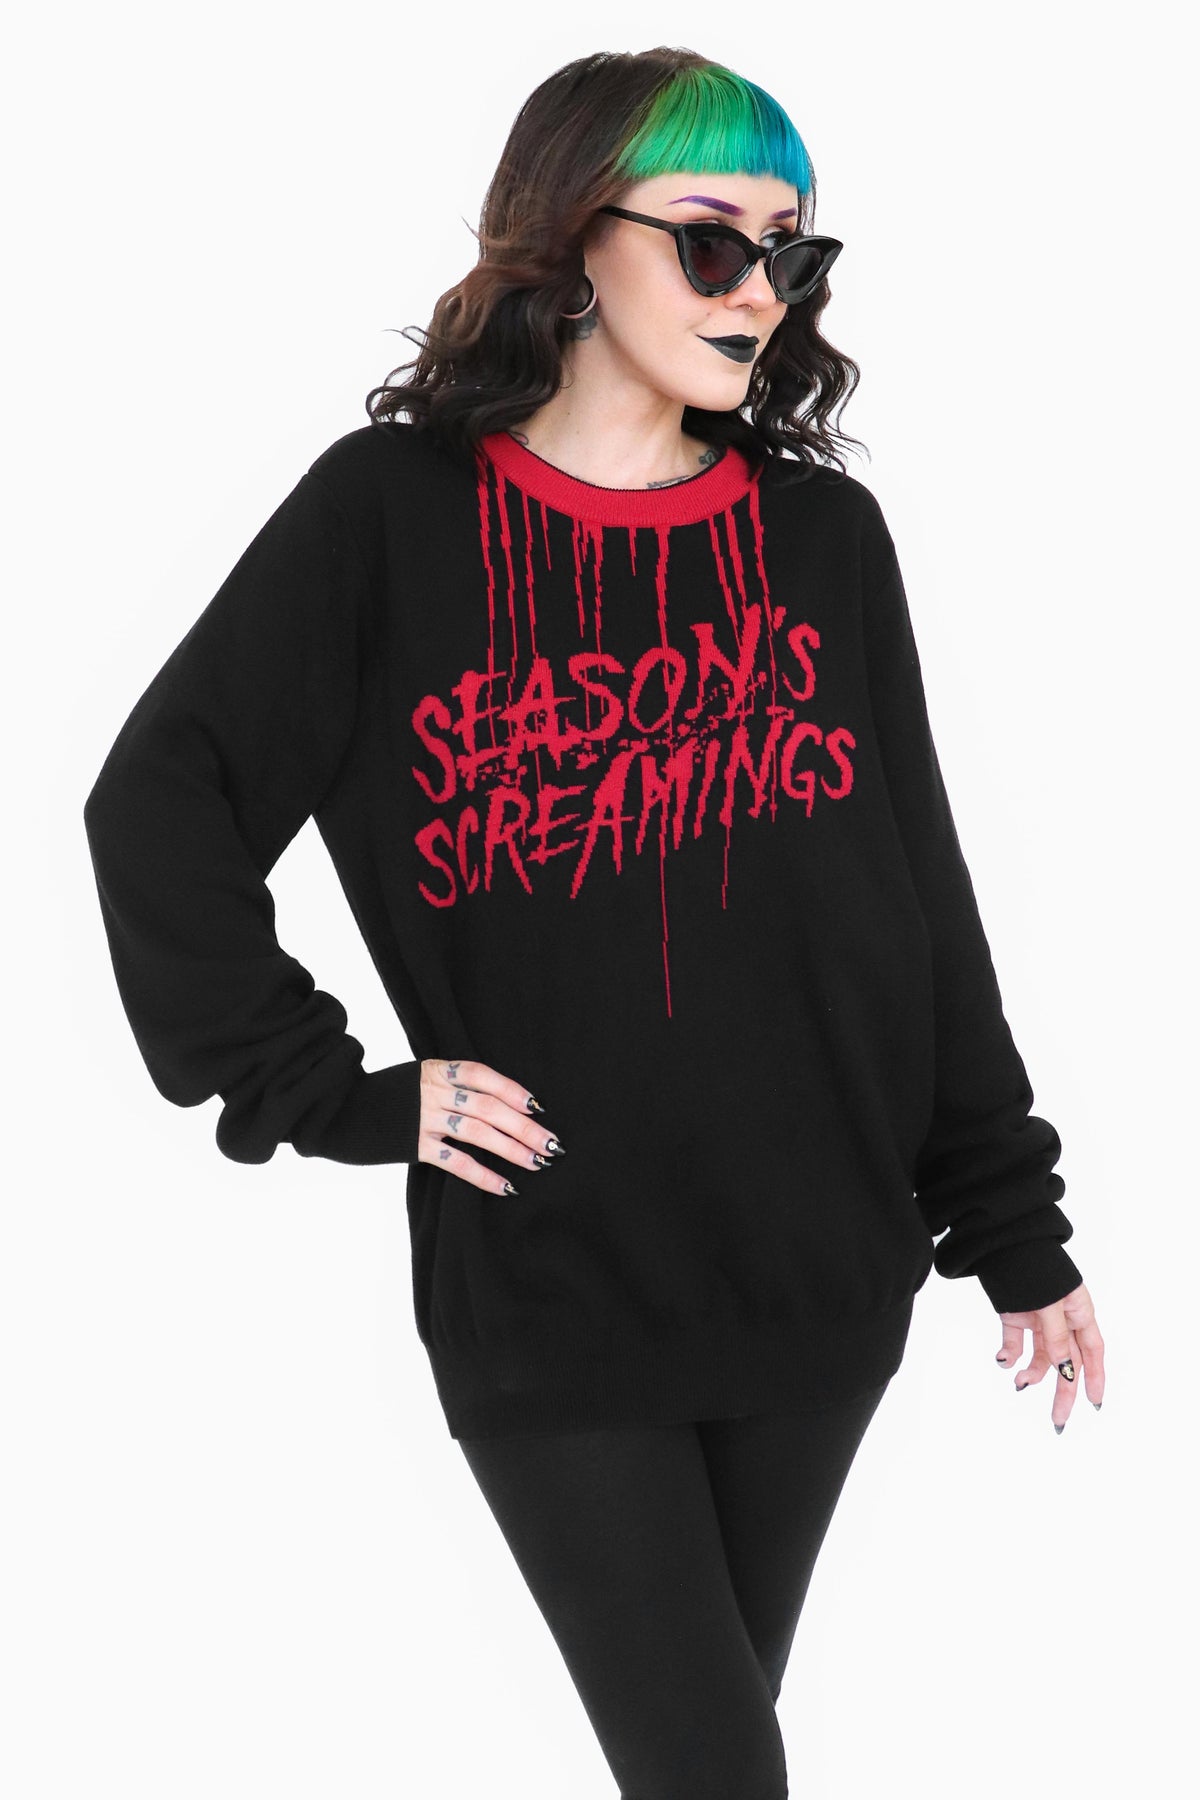 Season's Screamings Sweater - Size XS left!